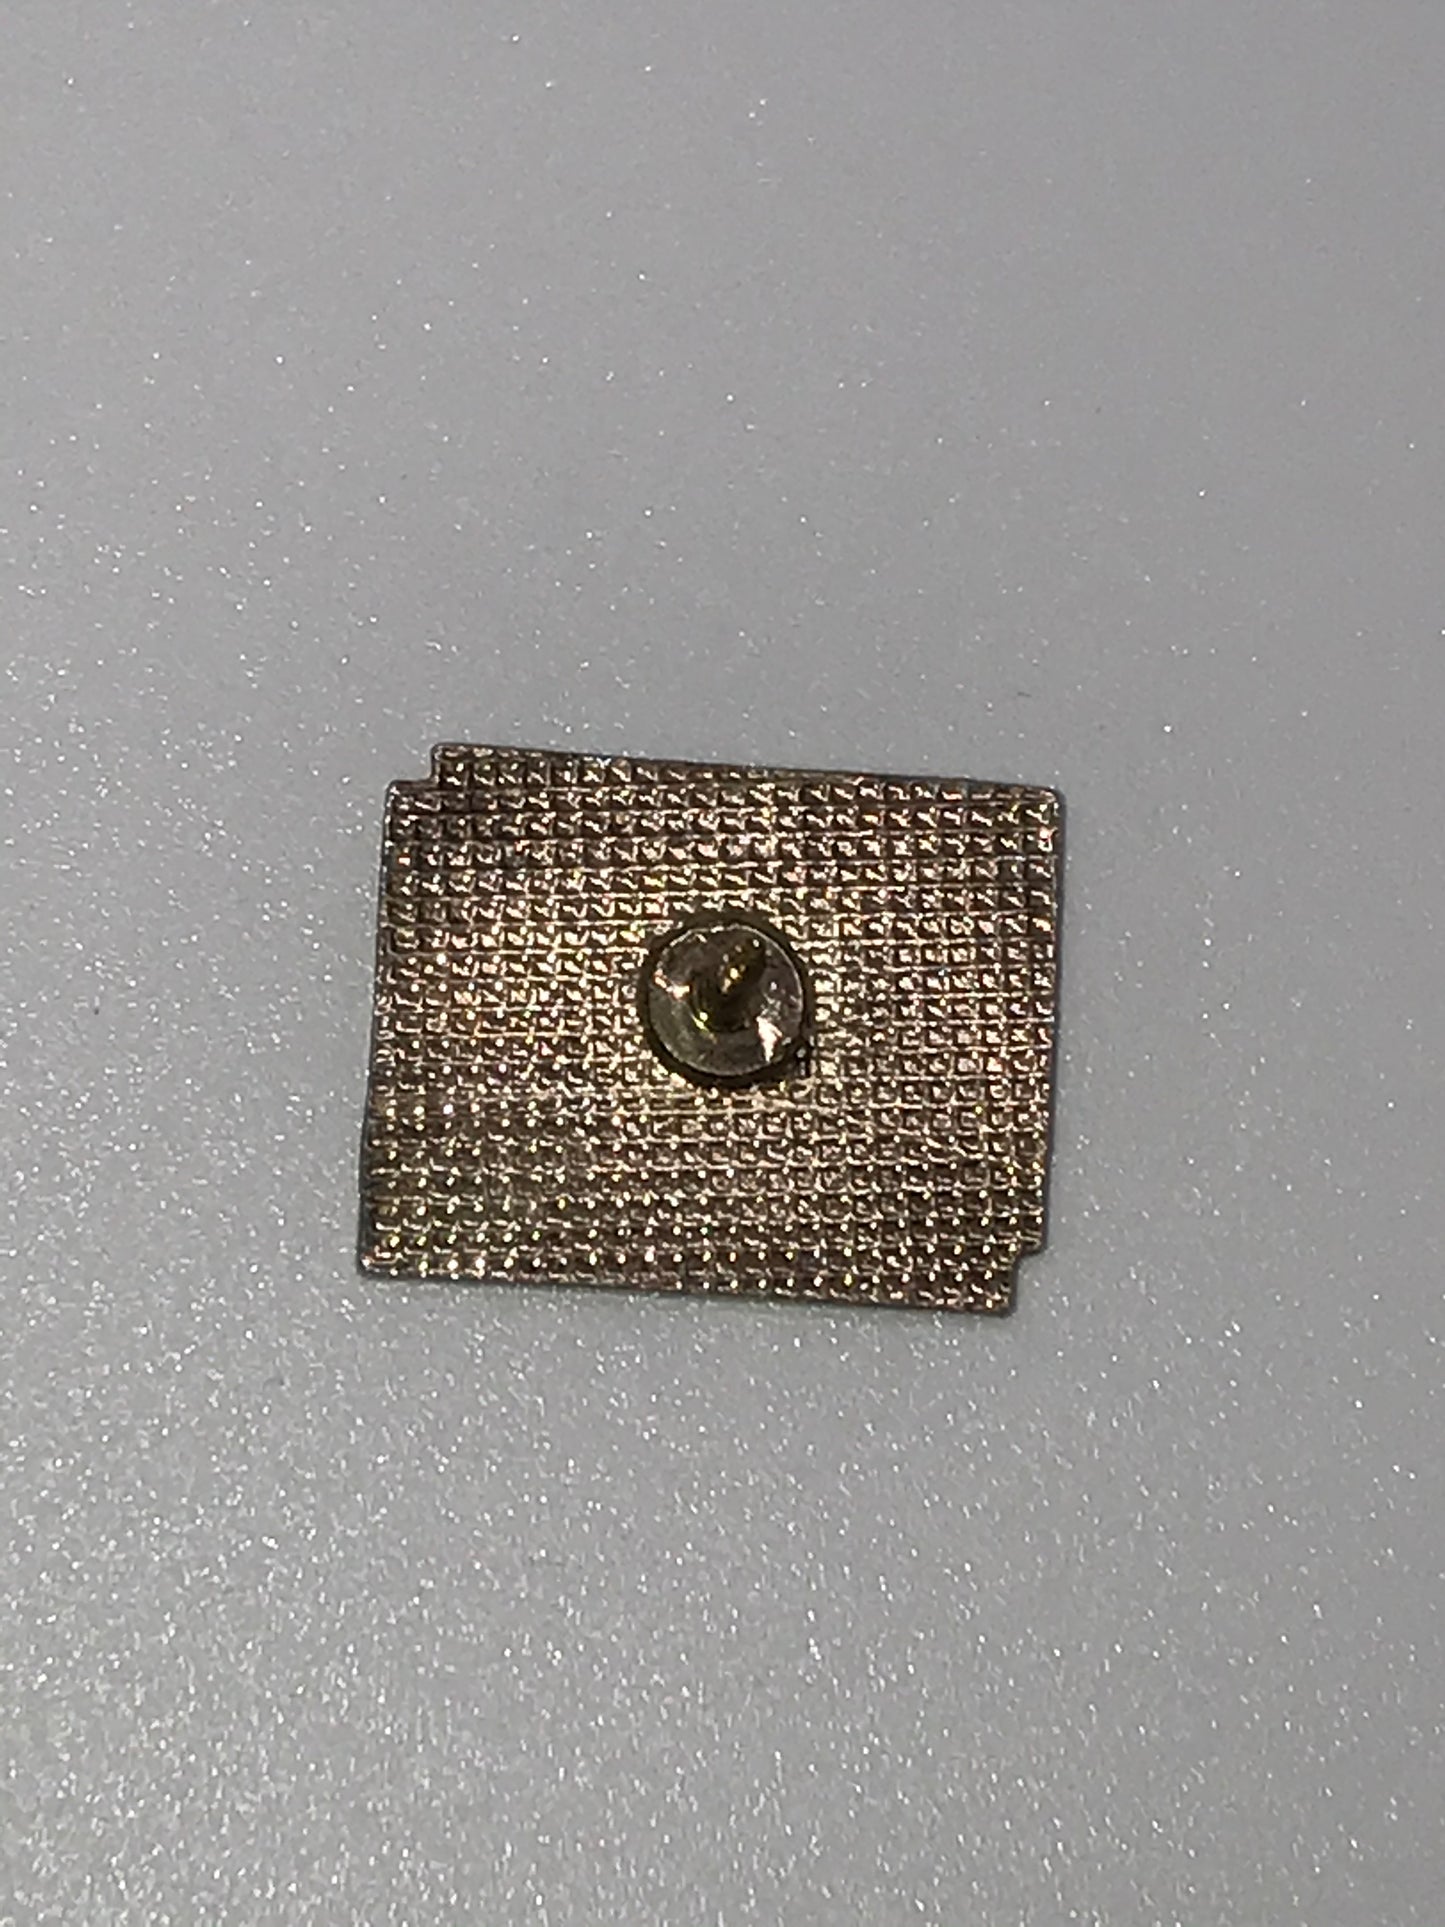 Vintage Dollar General Pin